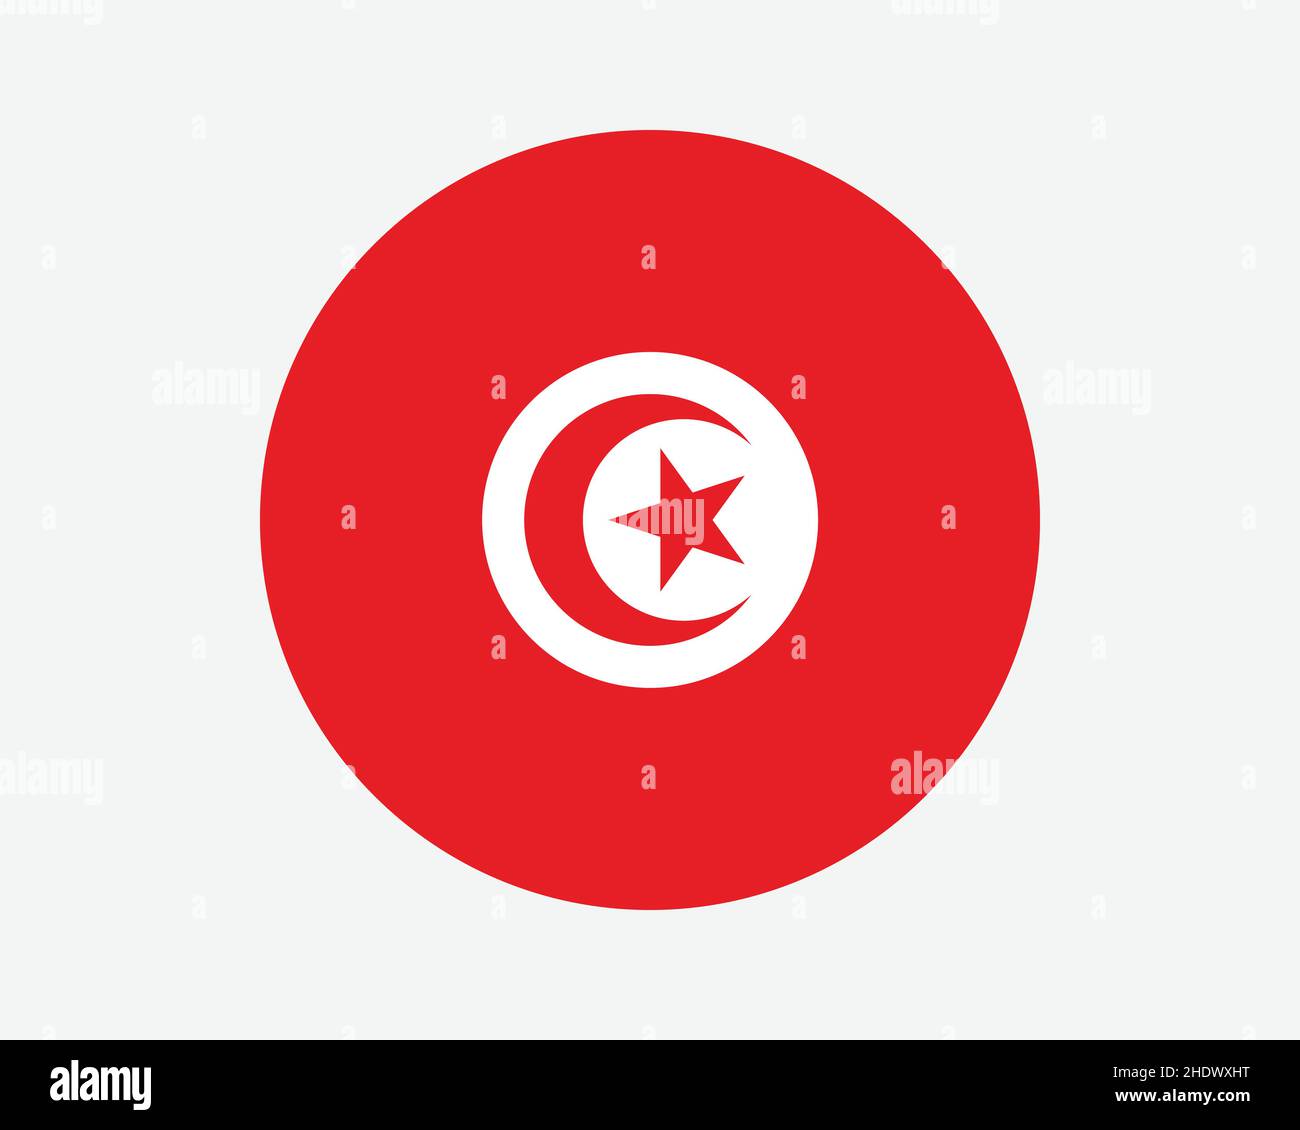 Tunesien Rundland Flagge. Nationalflagge Des Tunesischen Kreises. Rundschreiben-Knopfbanner der Republik Tunesien. EPS-Vektorgrafik. Stock Vektor